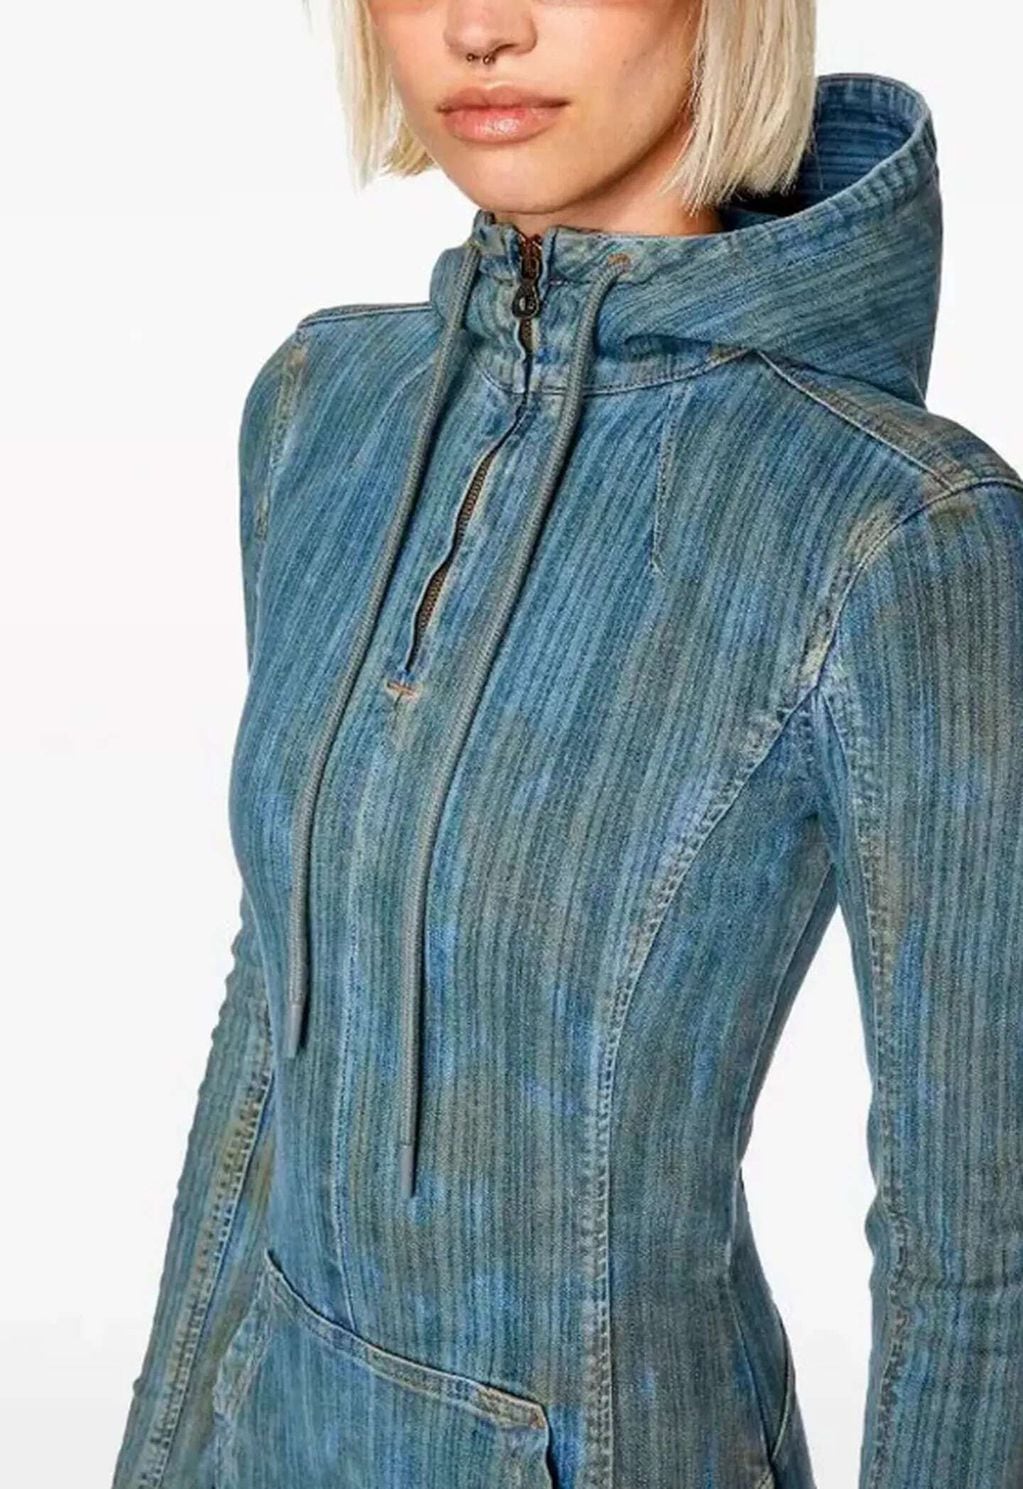 Cuánto se gastó Tini Stoessel en su outfit para Rummi. / Archivo